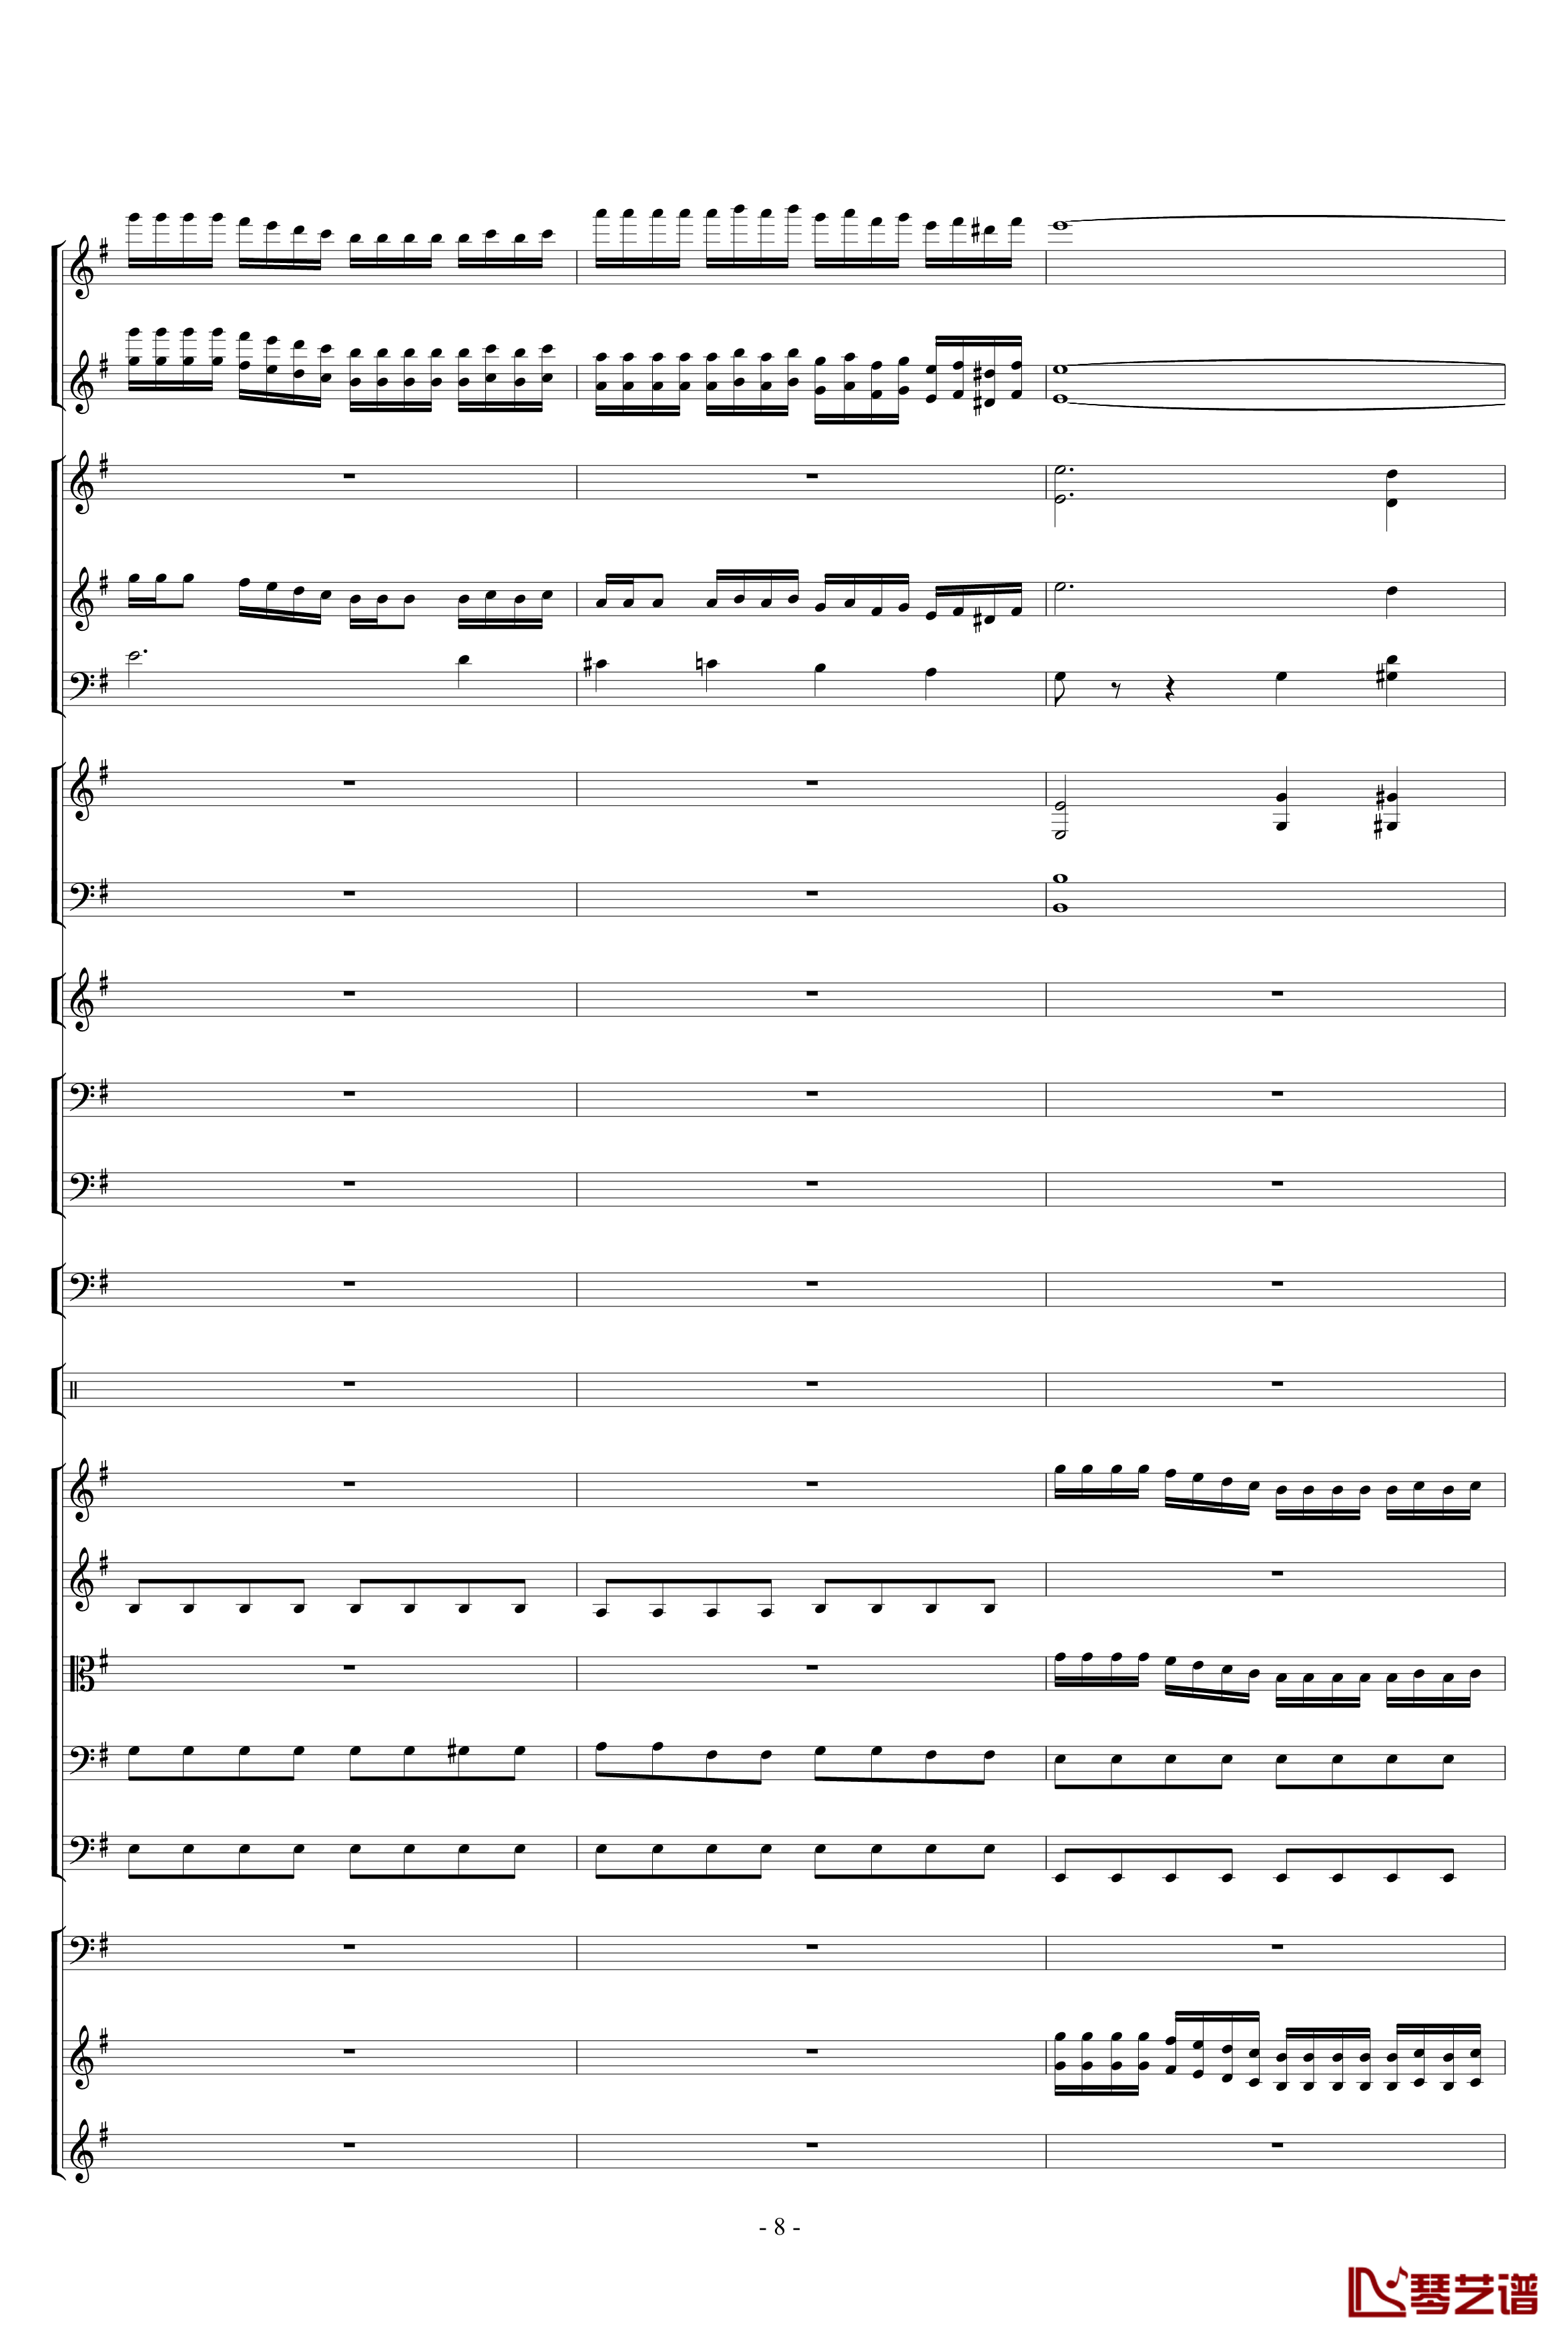 胡桃夹子组曲之进行曲钢琴谱-柴科夫斯基-Peter Ilyich Tchaikovsky8